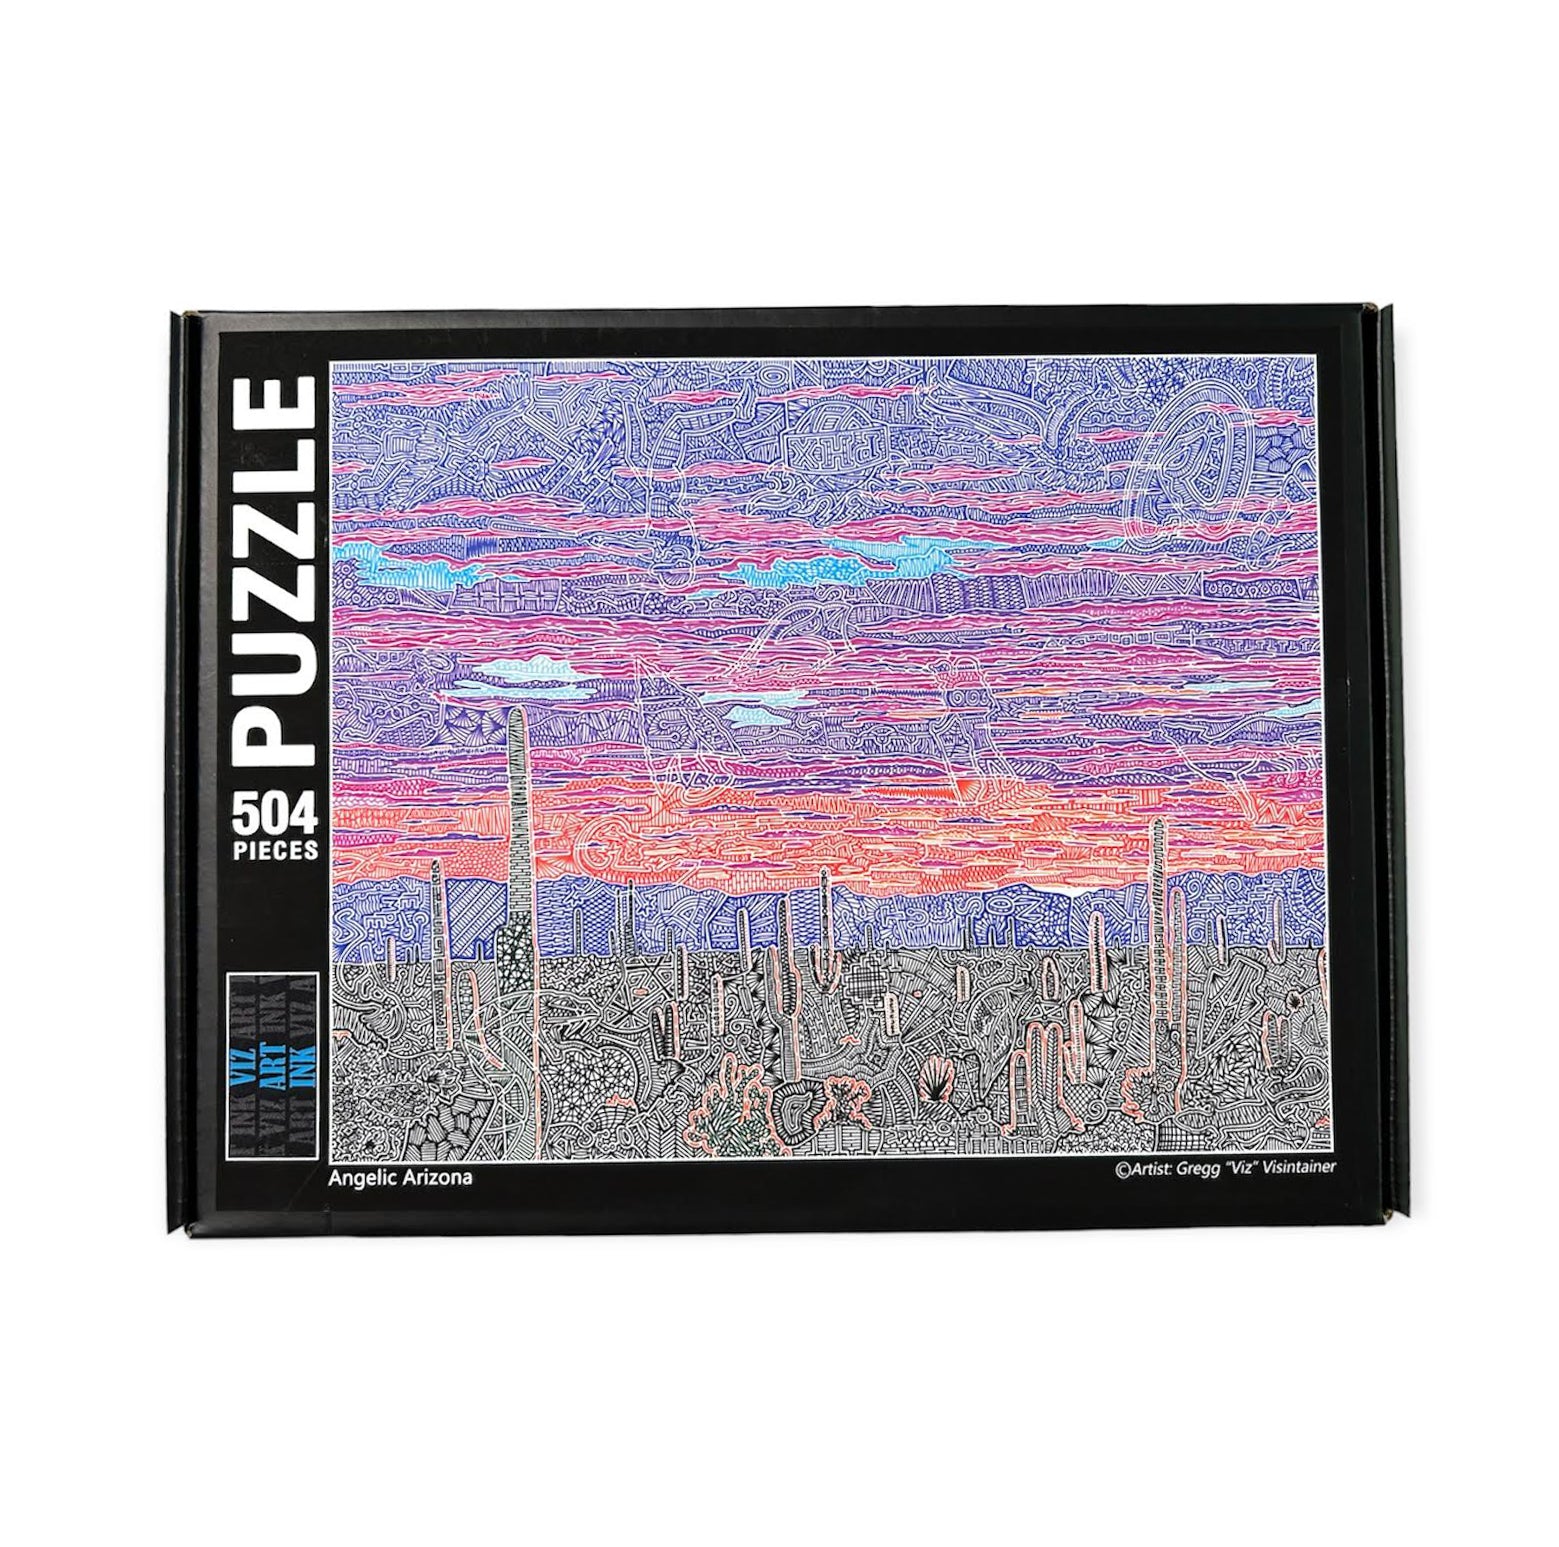 Puzzle (504 Pieces) - Angelic Arizona